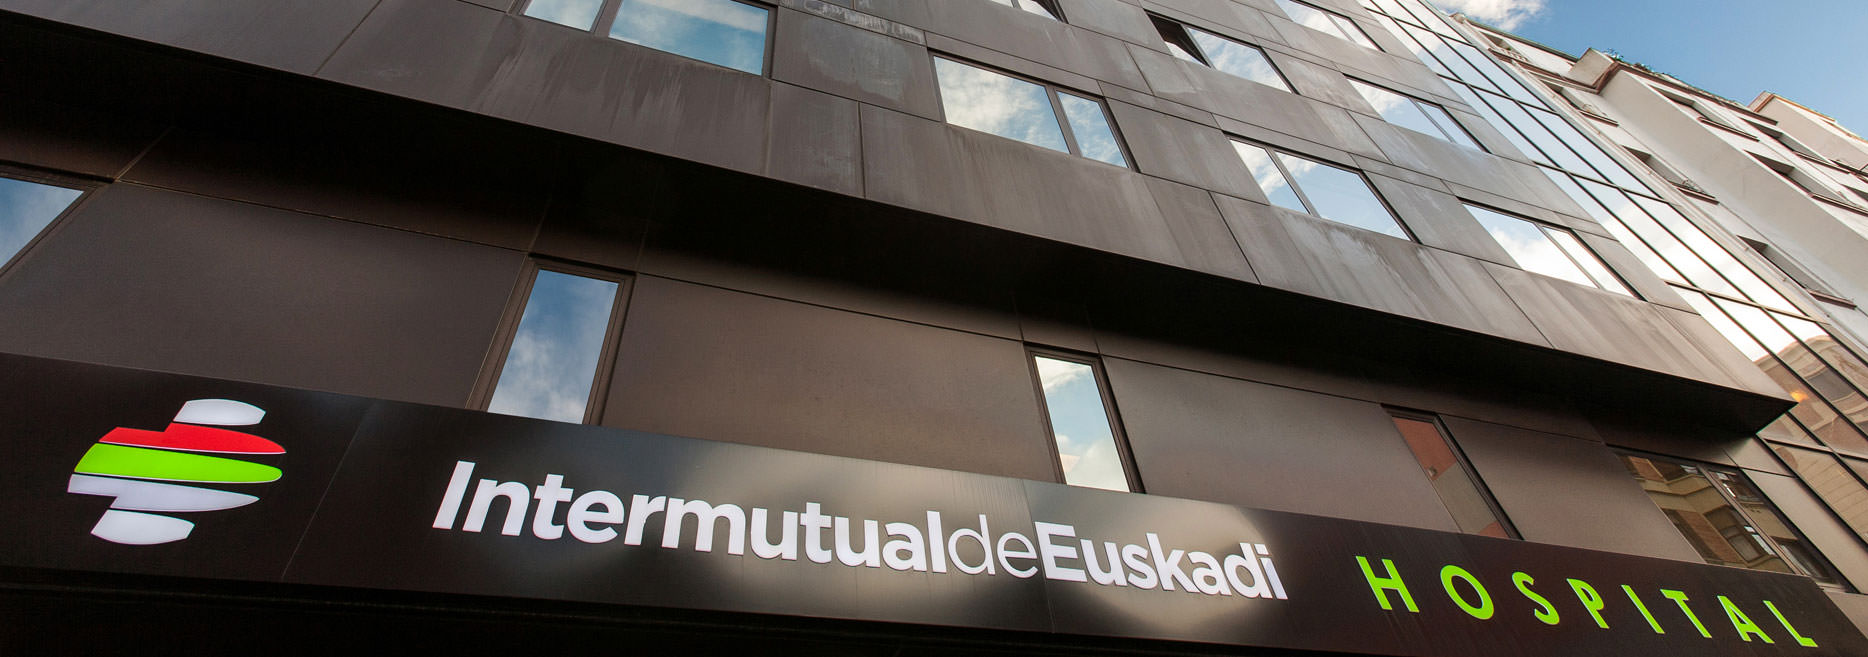 Imagen de la noticia El Hospital Intermutual de Euskadi nos adjudica el conc...